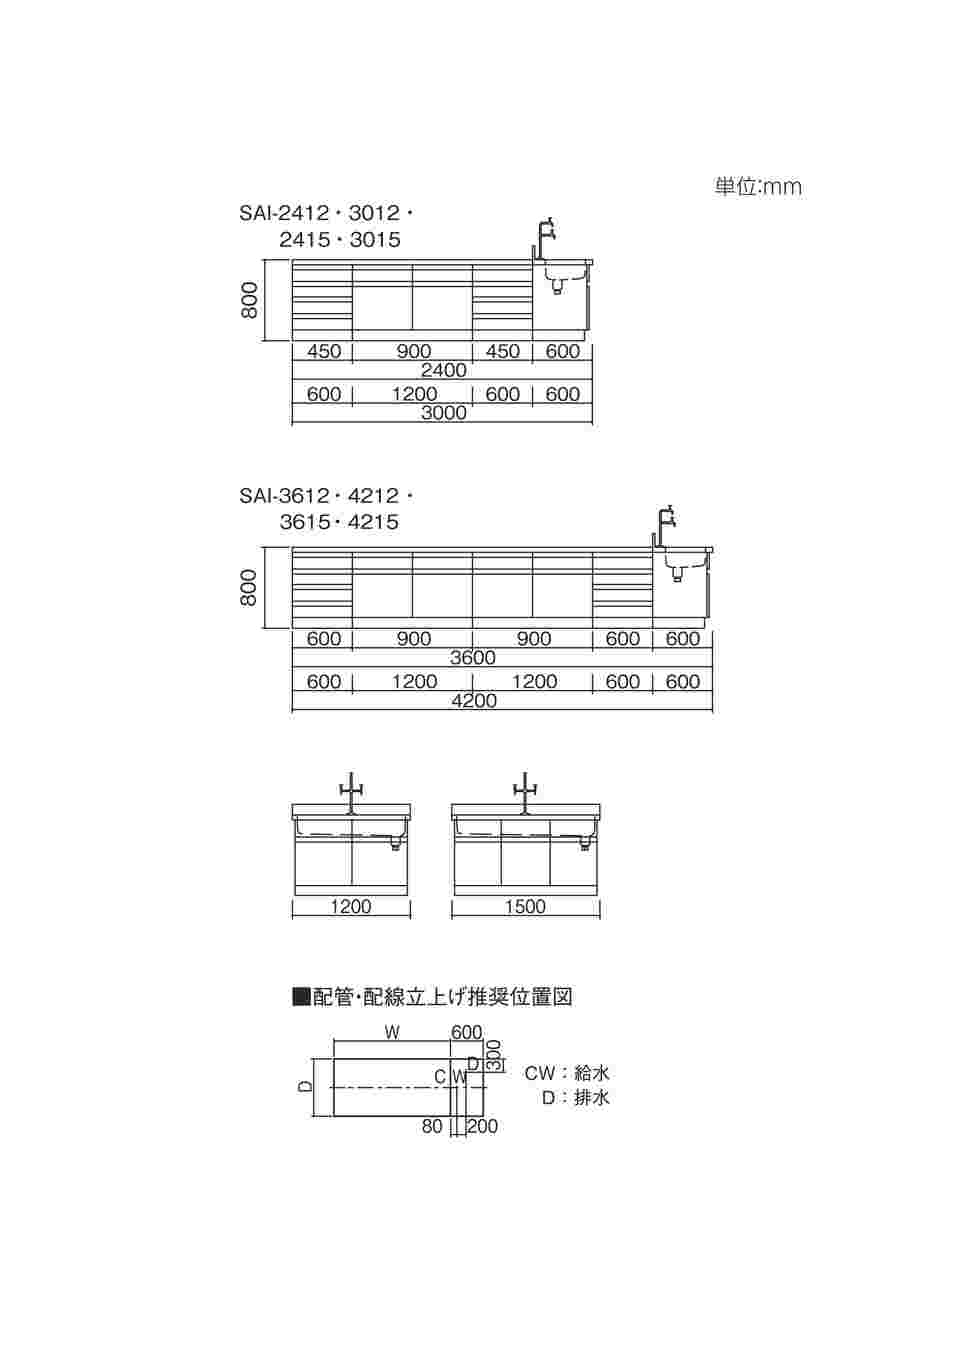 アズワン3-7765-02中央実験台木製タイプSAO-2412(2400×1200×800mm)(as1-3-7765-02) - 1